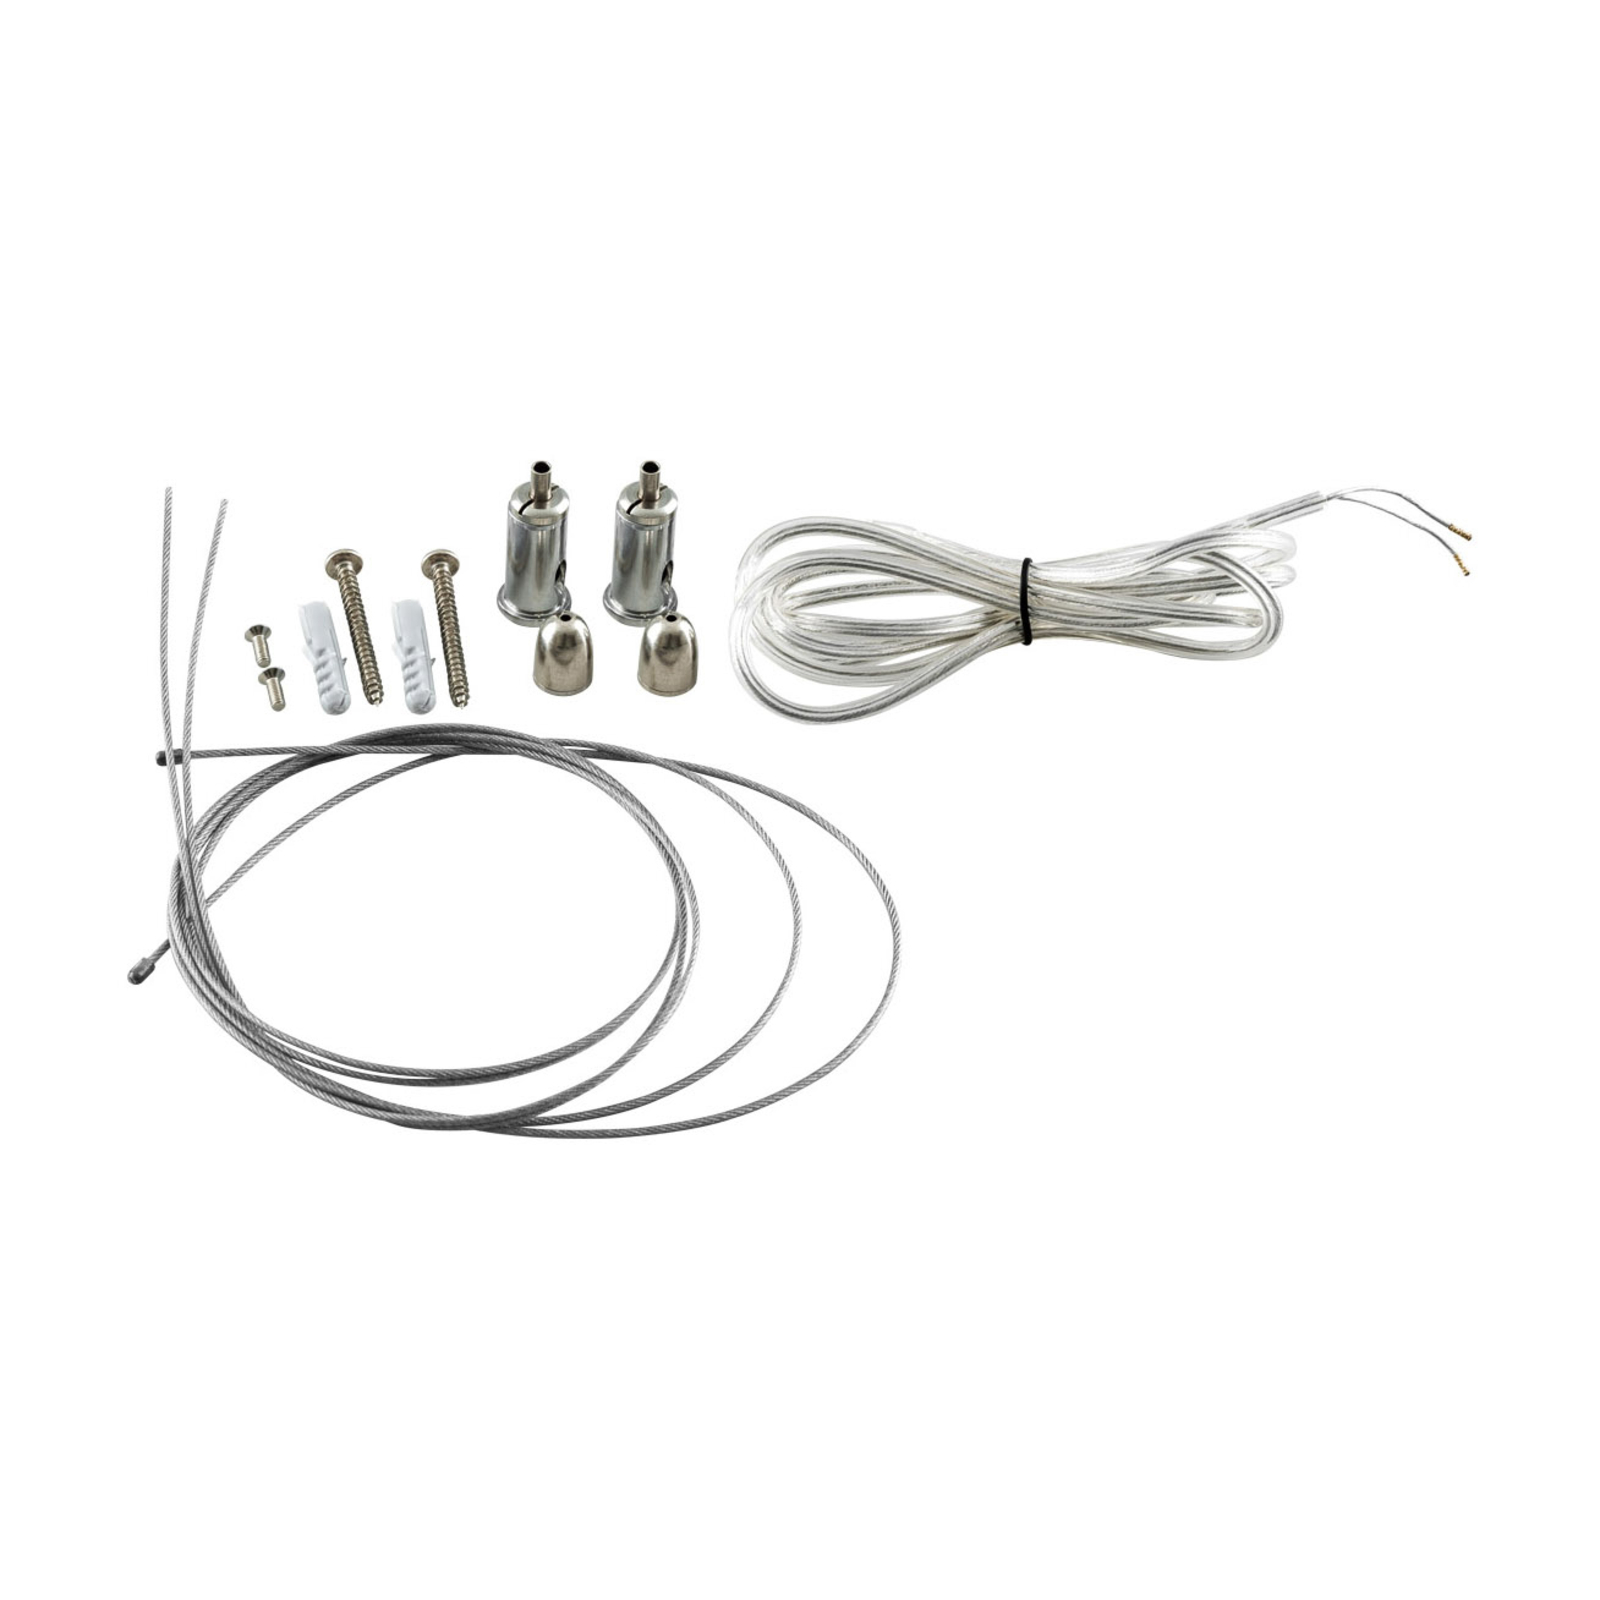 EVN Munus cable suspension kit for Munus series